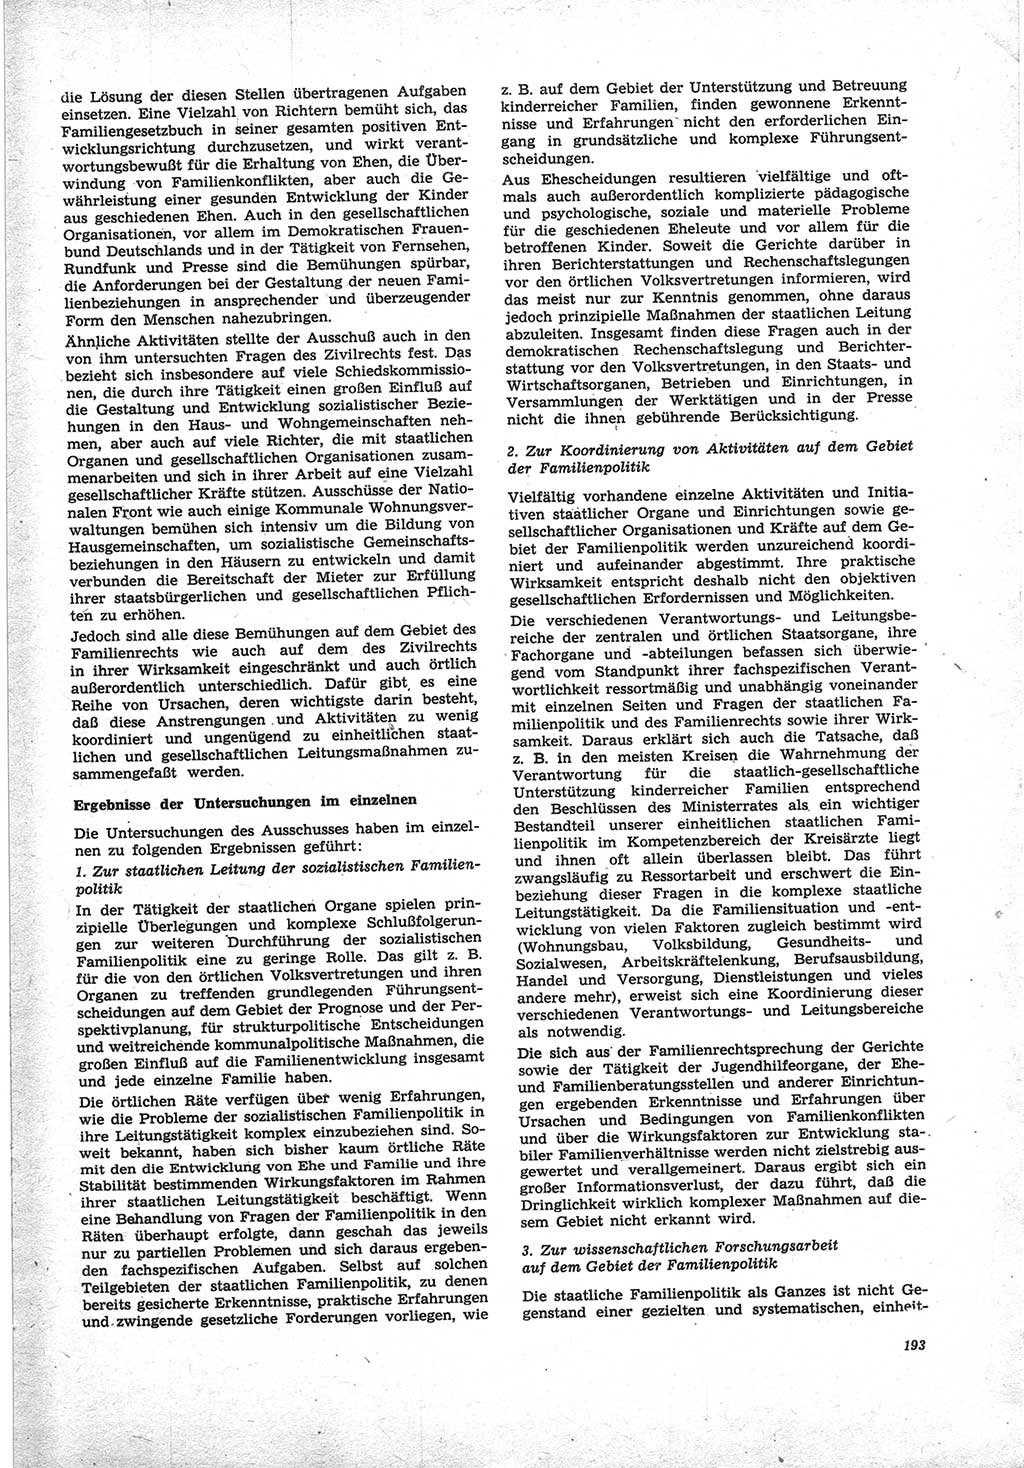 Neue Justiz (NJ), Zeitschrift für Recht und Rechtswissenschaft [Deutsche Demokratische Republik (DDR)], 25. Jahrgang 1971, Seite 193 (NJ DDR 1971, S. 193)